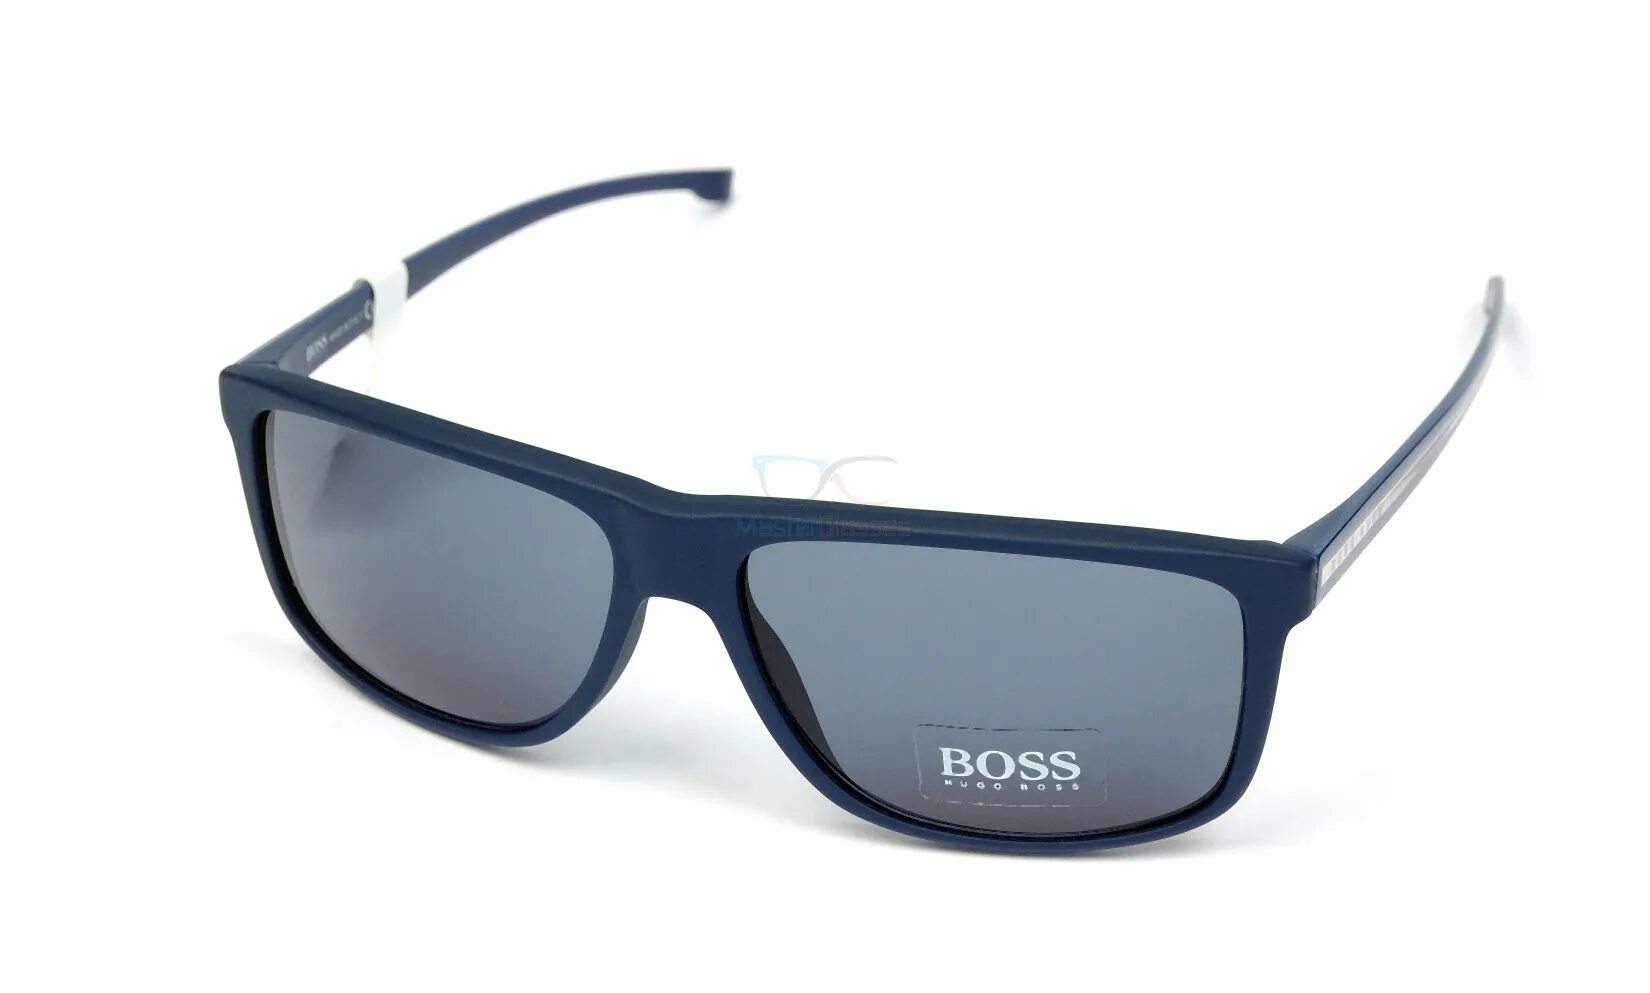 Солнцезащитные очки boss мужские. Очки Hugo Boss мужские солнцезащитные. Очки Хьюго босс мужские. Очки солнцезащитные Хьюго босс. Очки Hugo Boss мужские 1059/s.